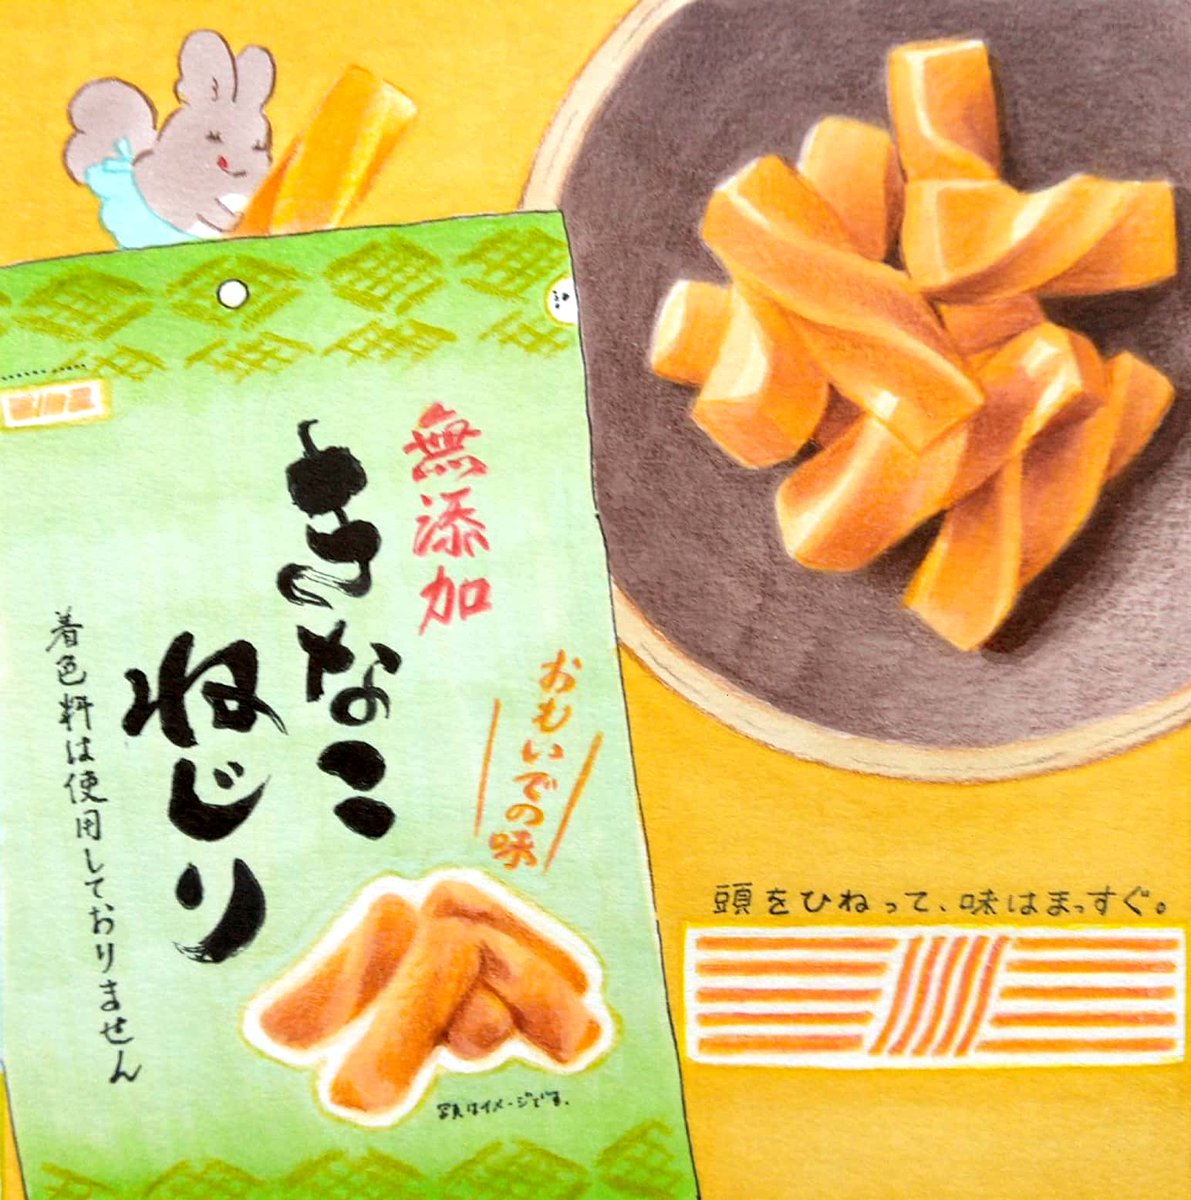 きなこねじりパーティーのはじまりだ!札幌第一製菓さんのきなこねじりは種類豊富で楽しいね🍵 #イラスト 